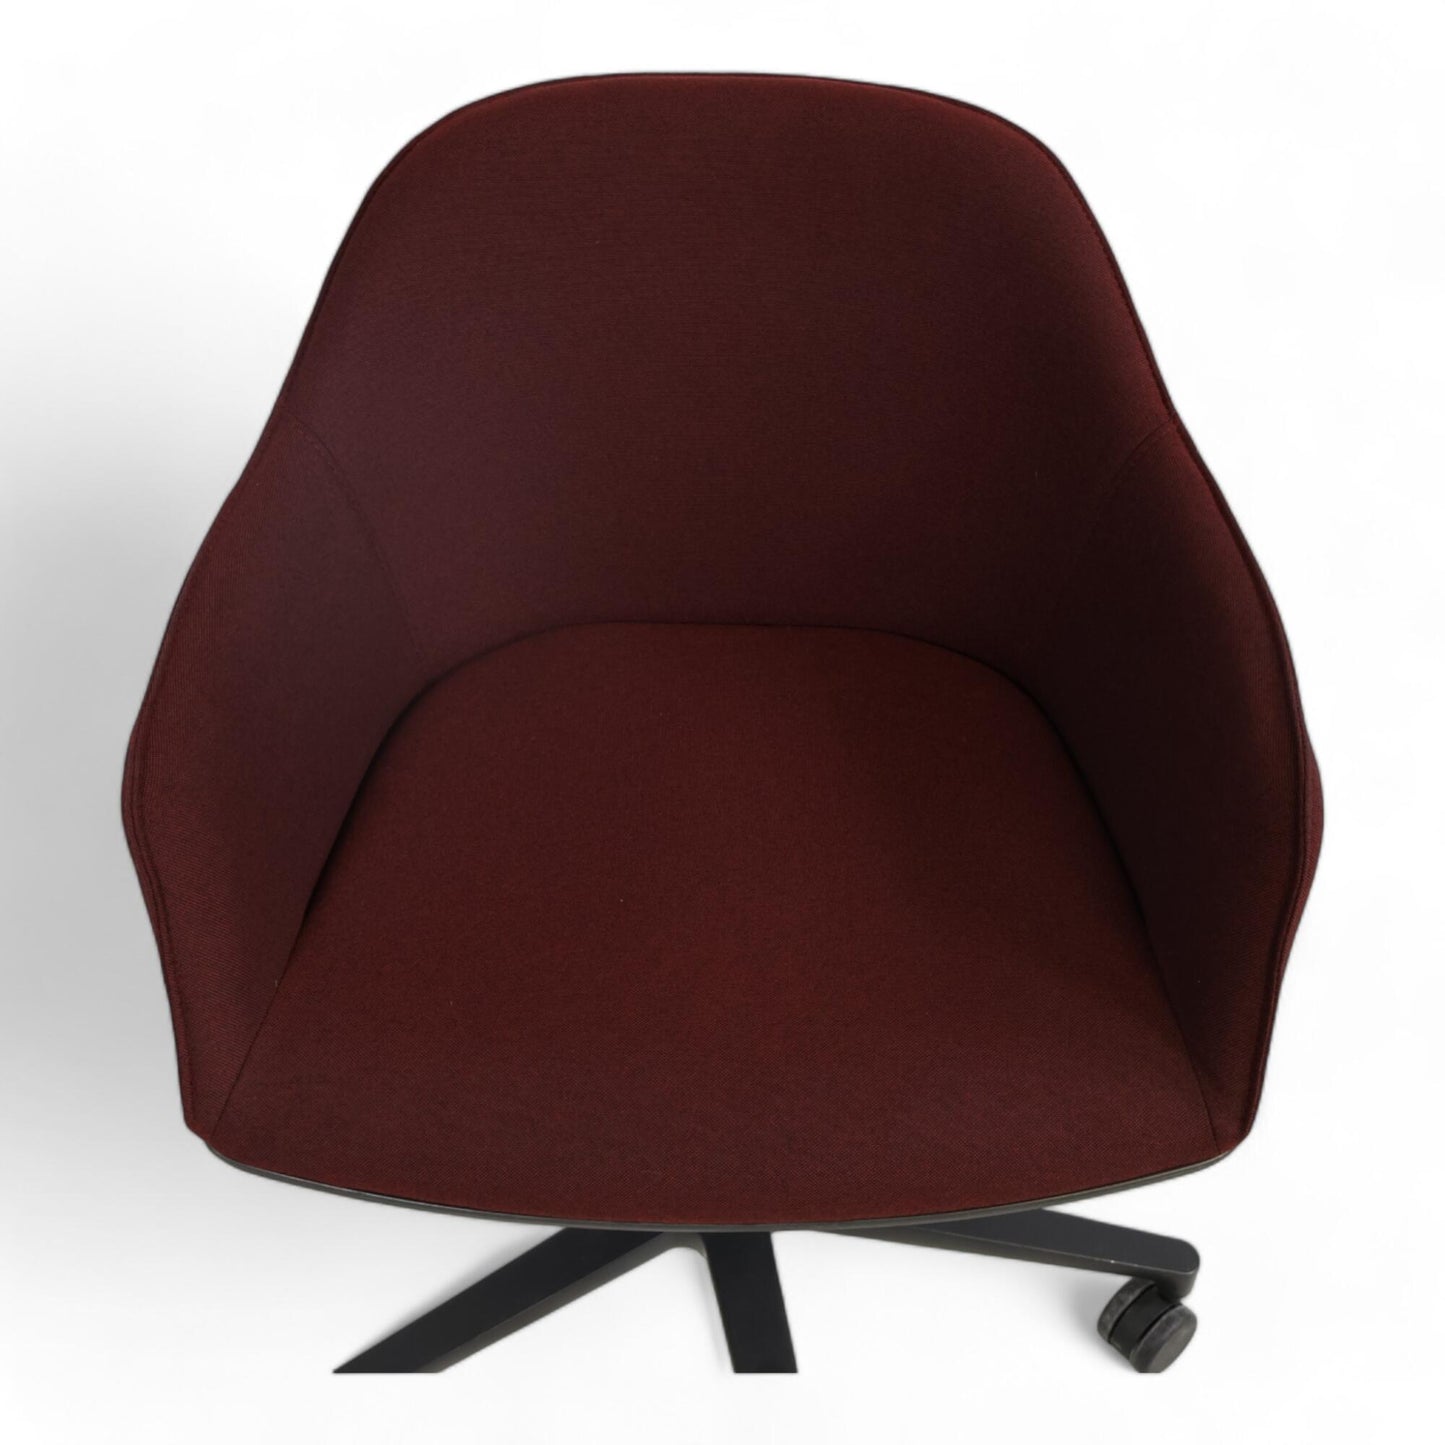 Nyrenset | Burgunder Vitra Softshell kontorstol med justerbar høyde